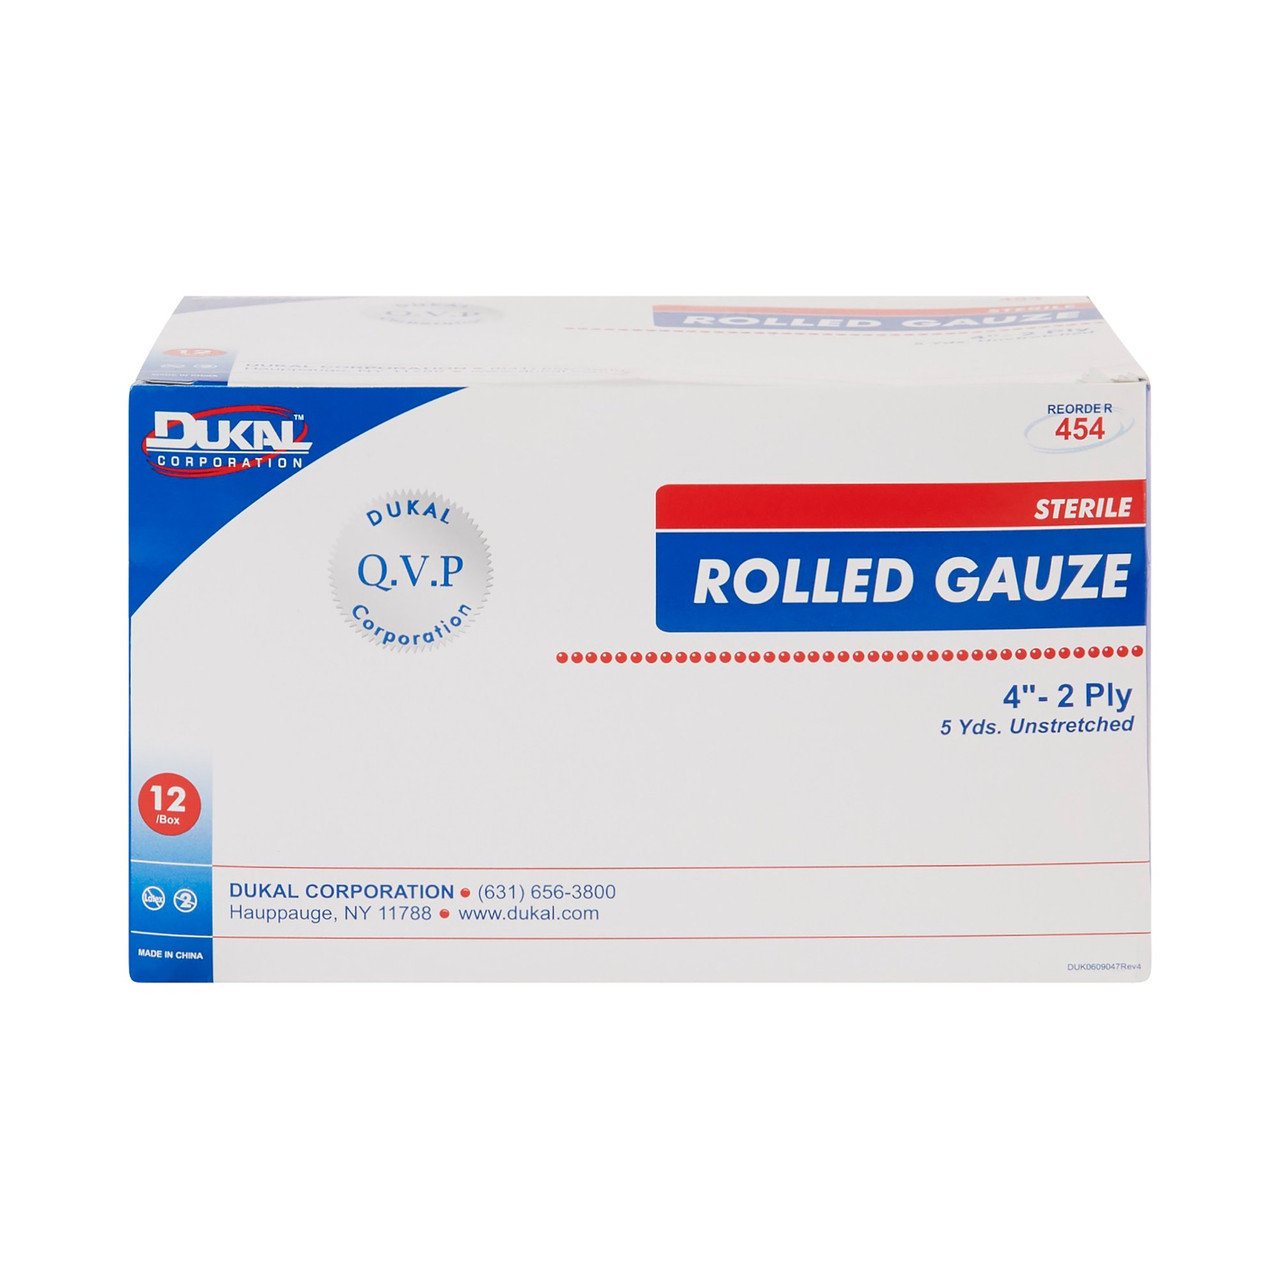 Dermacea Gauze Bandage Roll - Sterile Fluff Woven Gauze - Simply